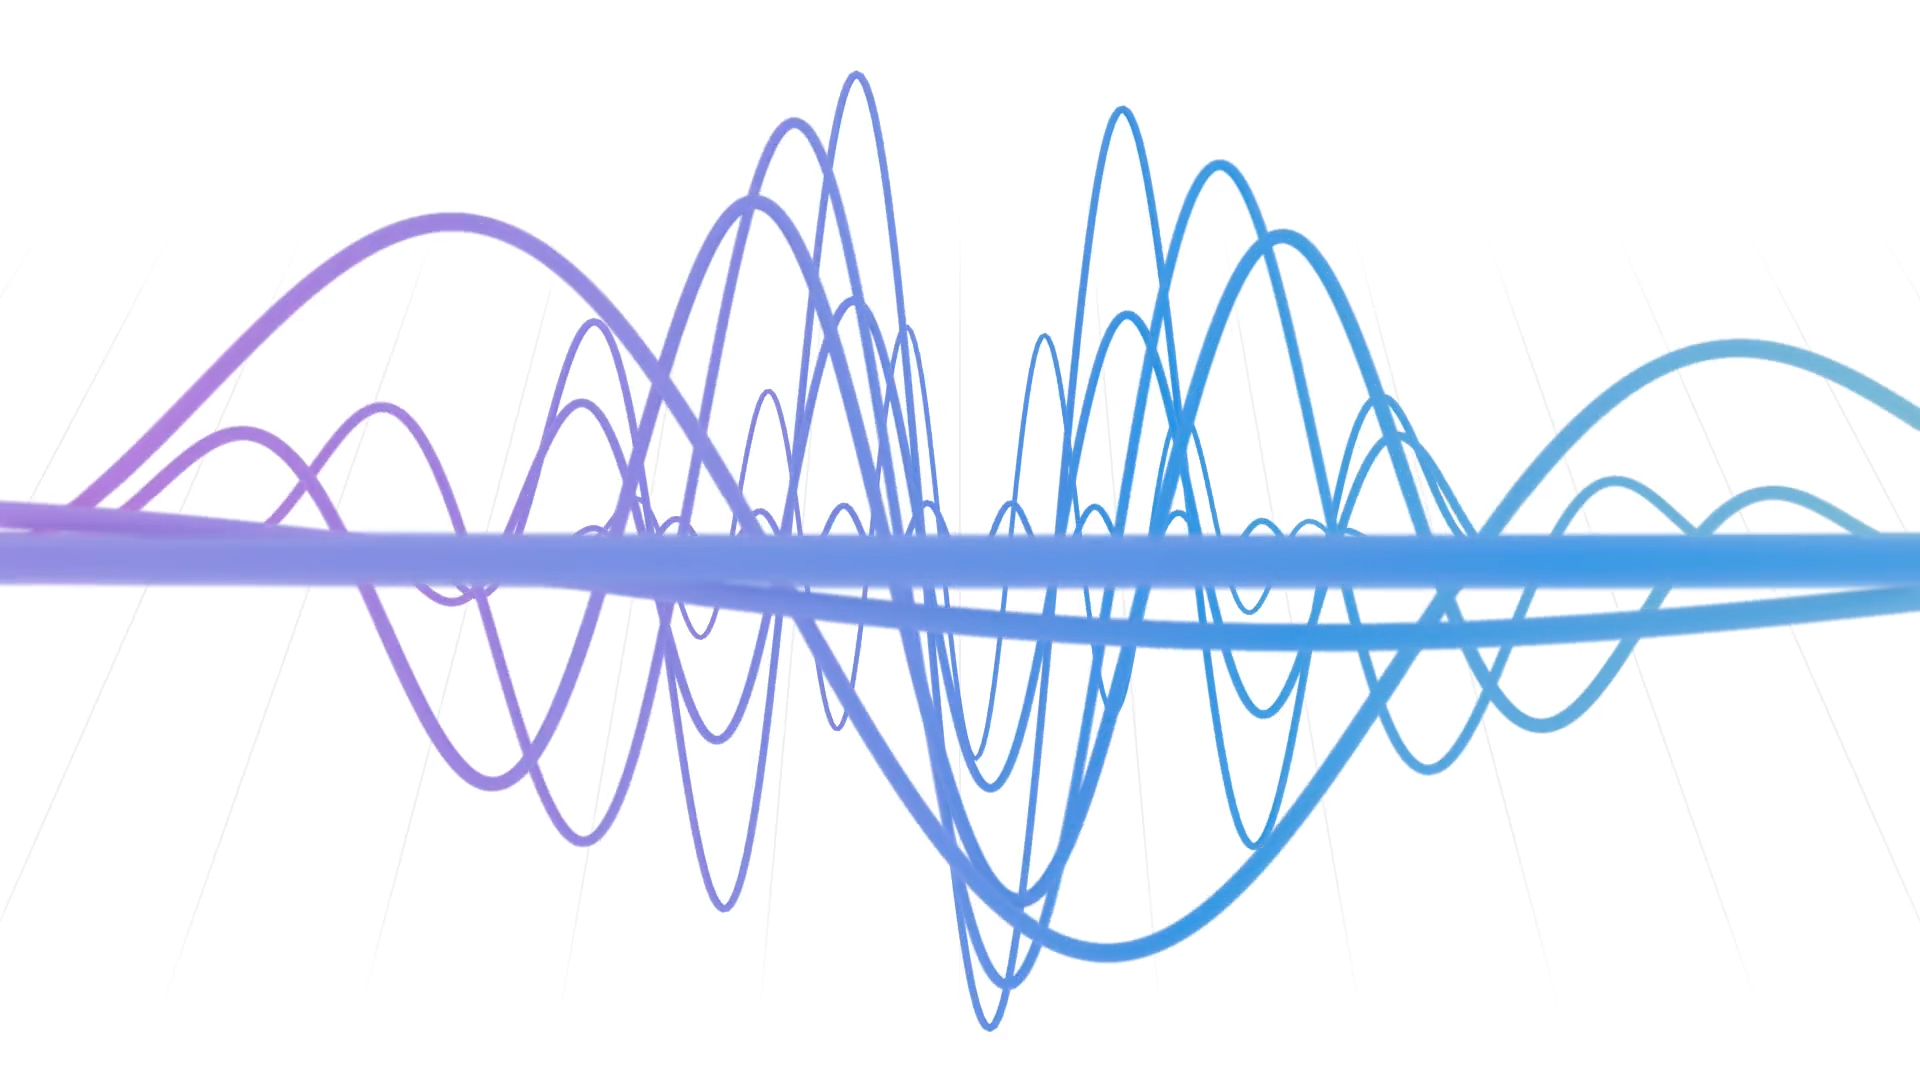 A voice audio wave image.